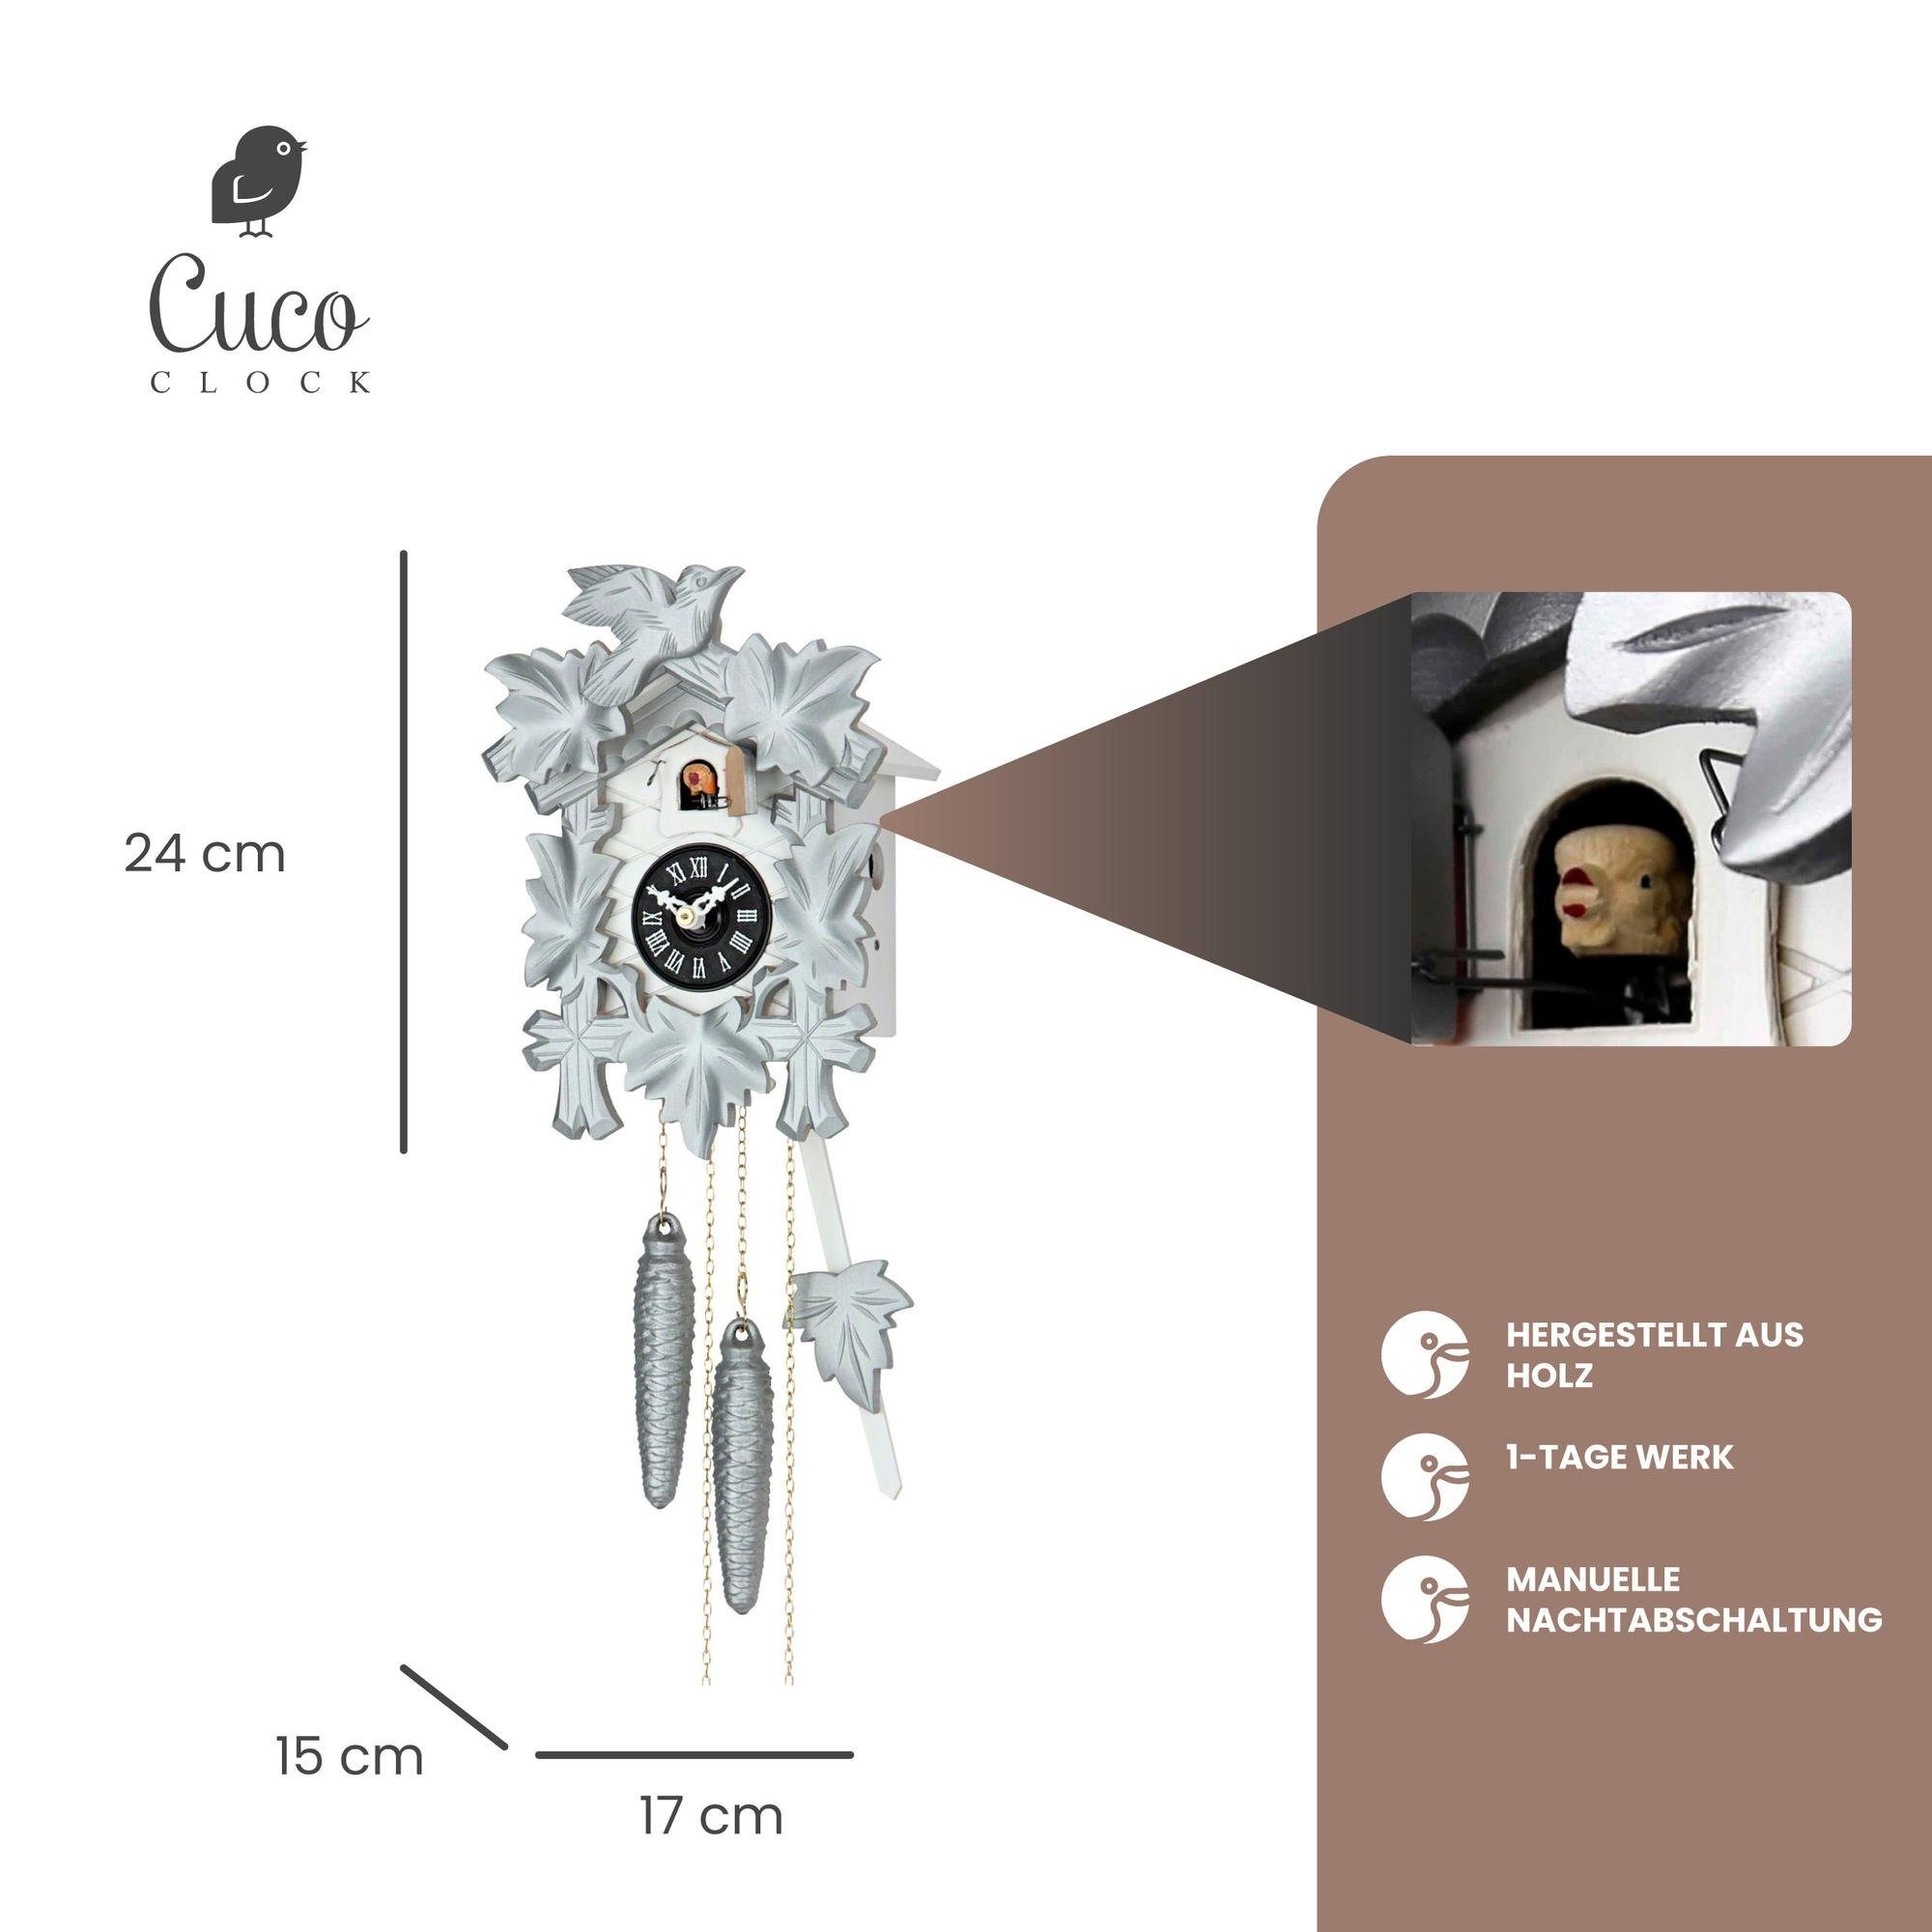 24cm, Schwarzwalduhr Clock Werk, x Kuckucksuhr Wanduhr (15 - Cuco Pendelwanduhr aus Tage Nachtabschaltung) 17 "Silbervogel" 1 Holz x manuelle